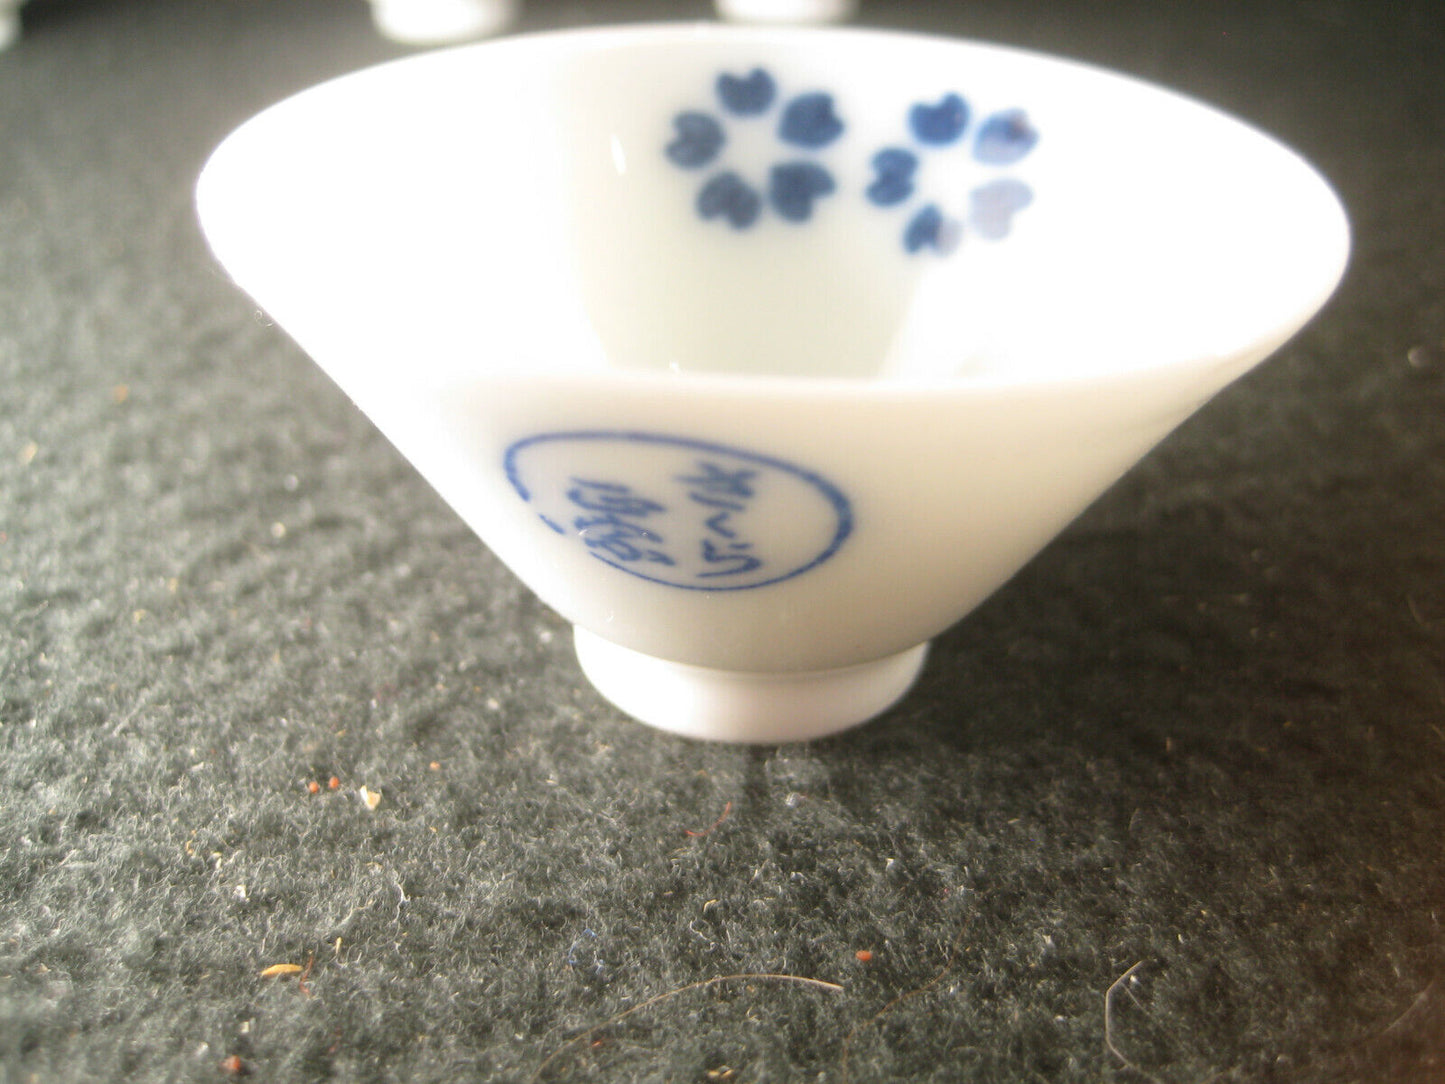 Vintage Japanese Sake CupSakura Guinomi / Ochoko Blue & White